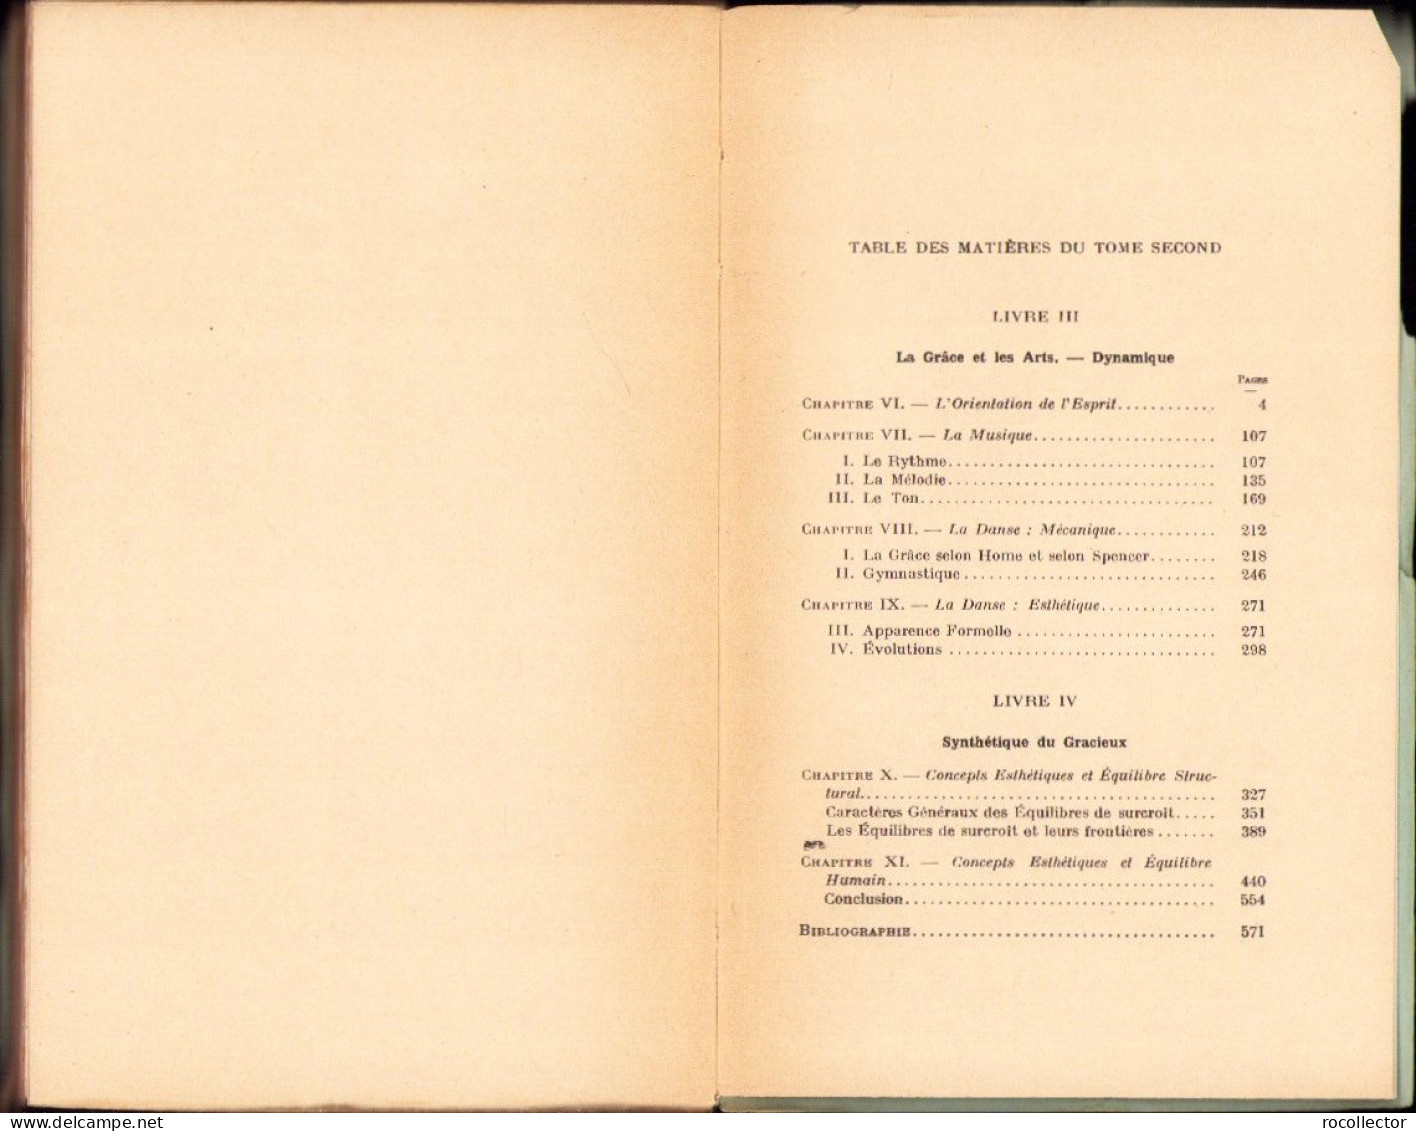 L’esthetique De La Grace, Introduction A L’etude Des Equilibres De Structure, Tome II, Par Raymond Bayer, 1933, Paris - Livres Anciens